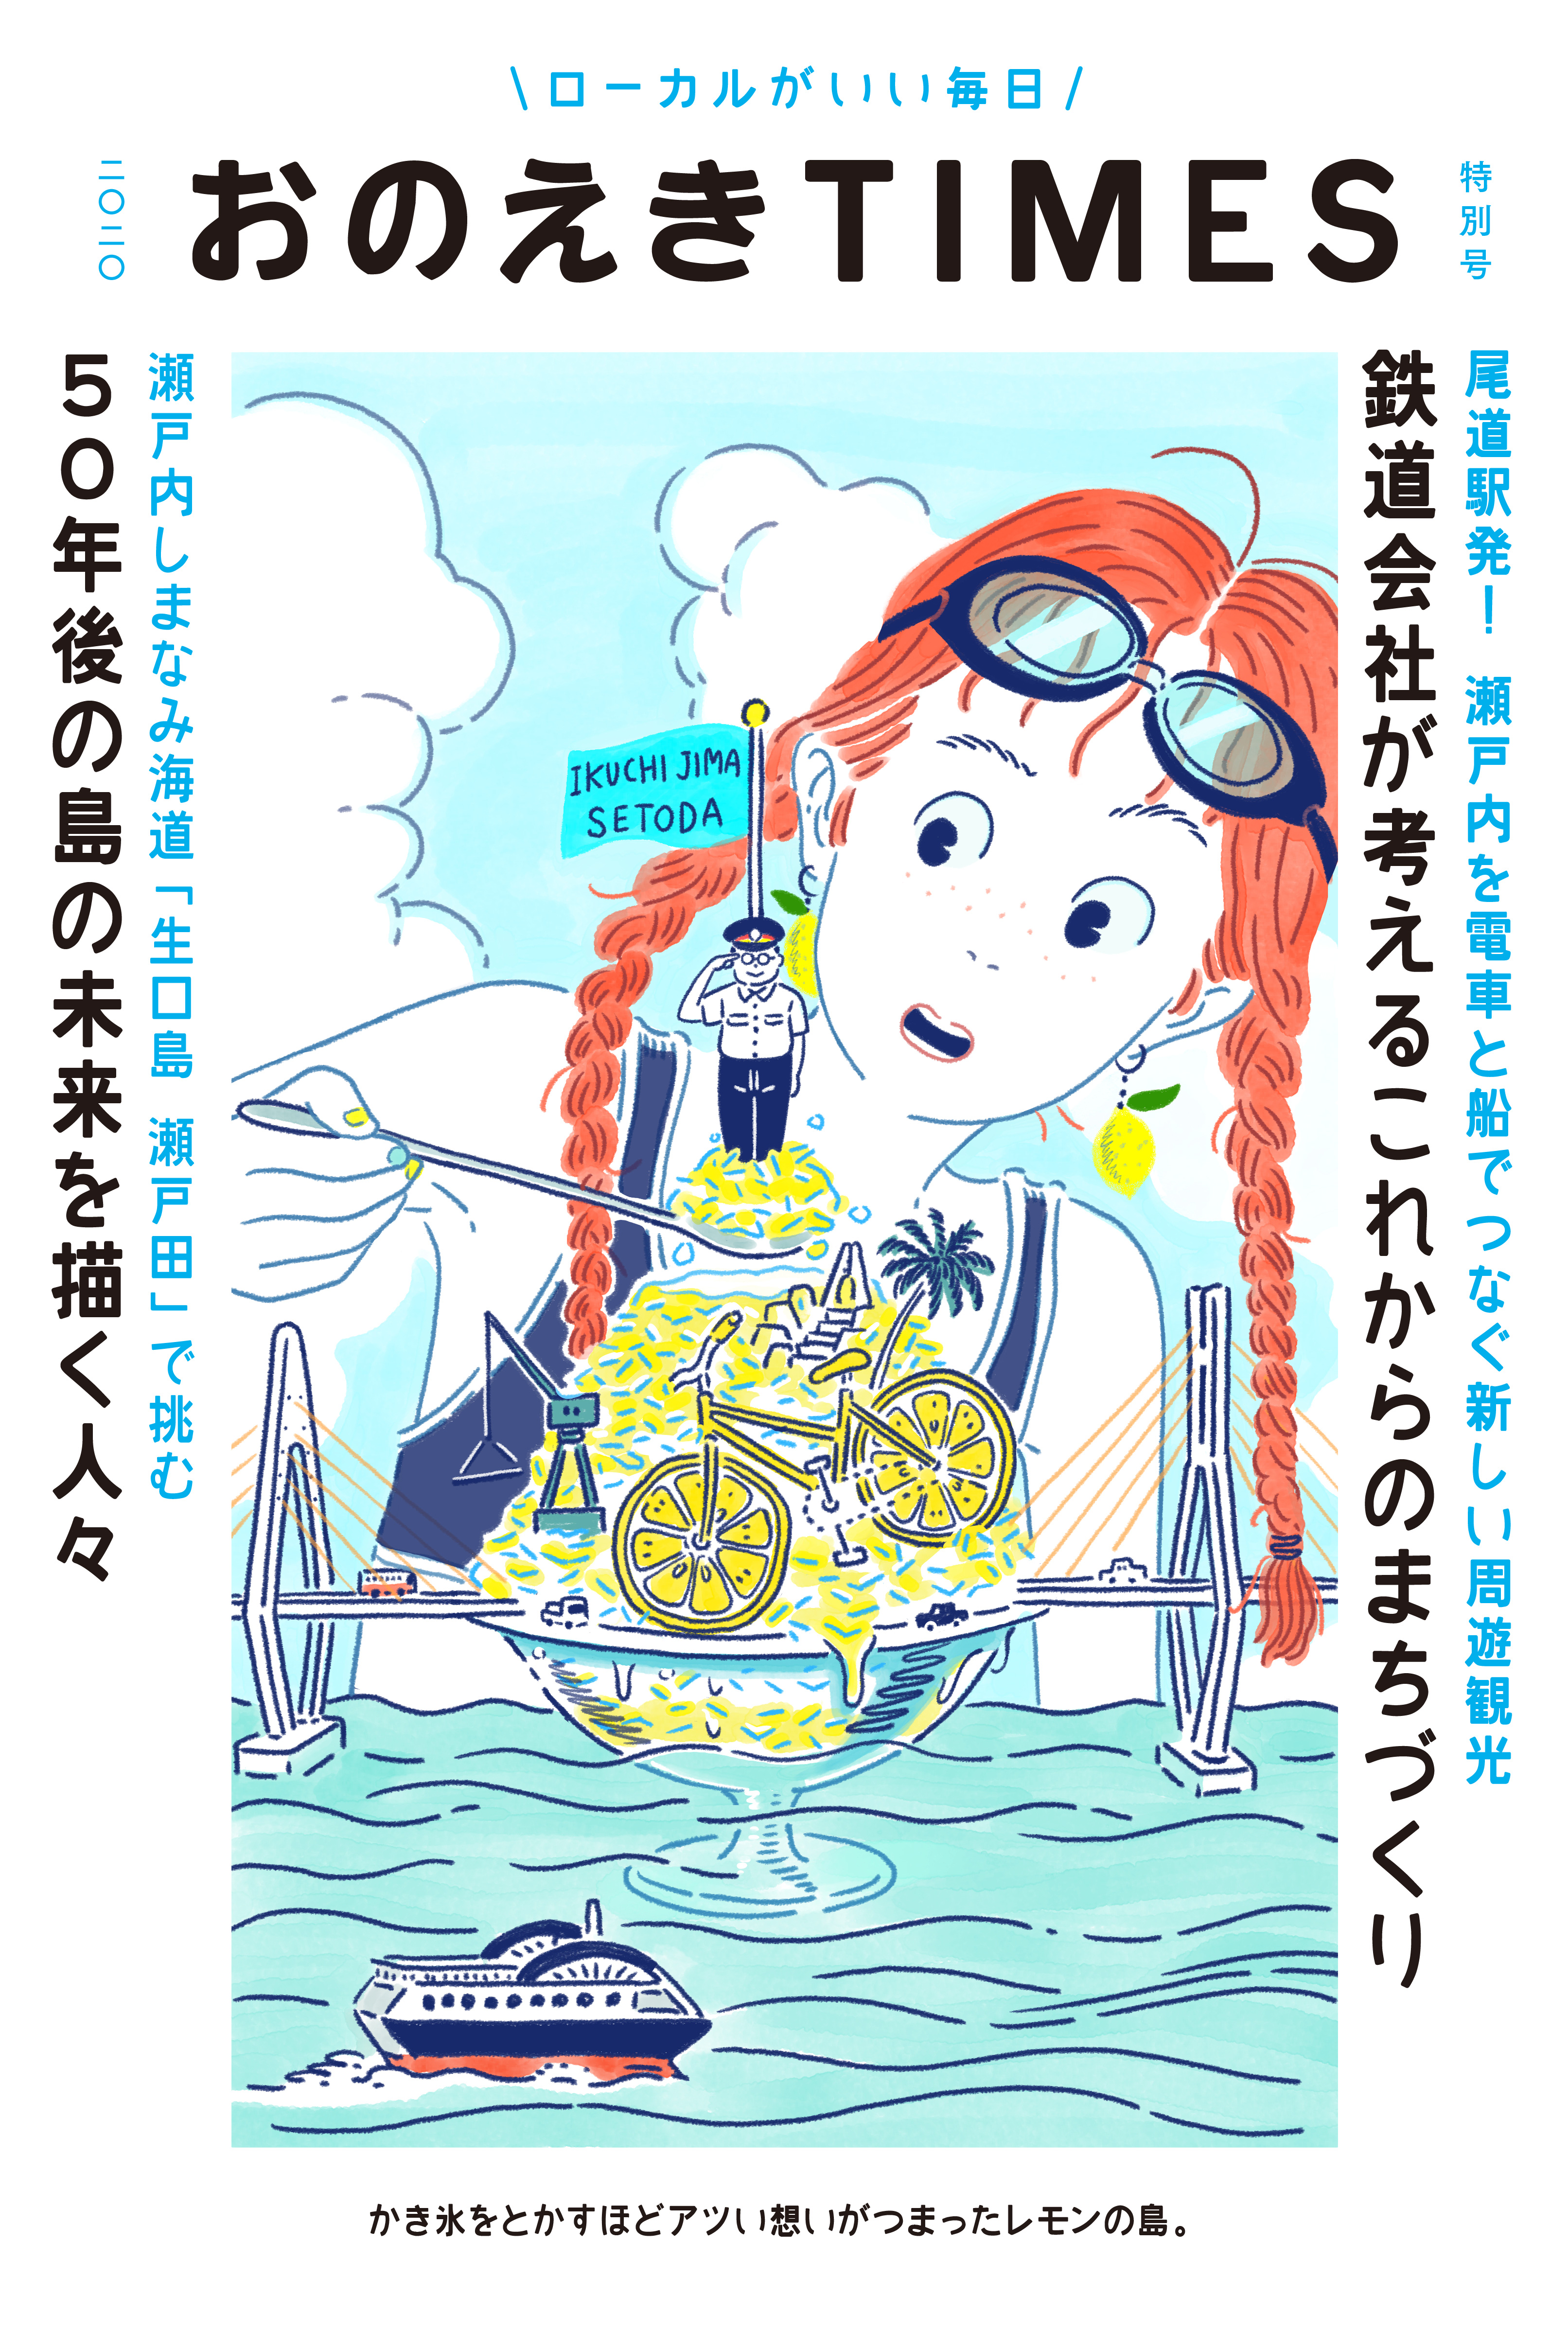 尾道駅発！地域への“愛着”を育むメディア「おのえきTIMES」新しい島旅を伝える特別号を発行